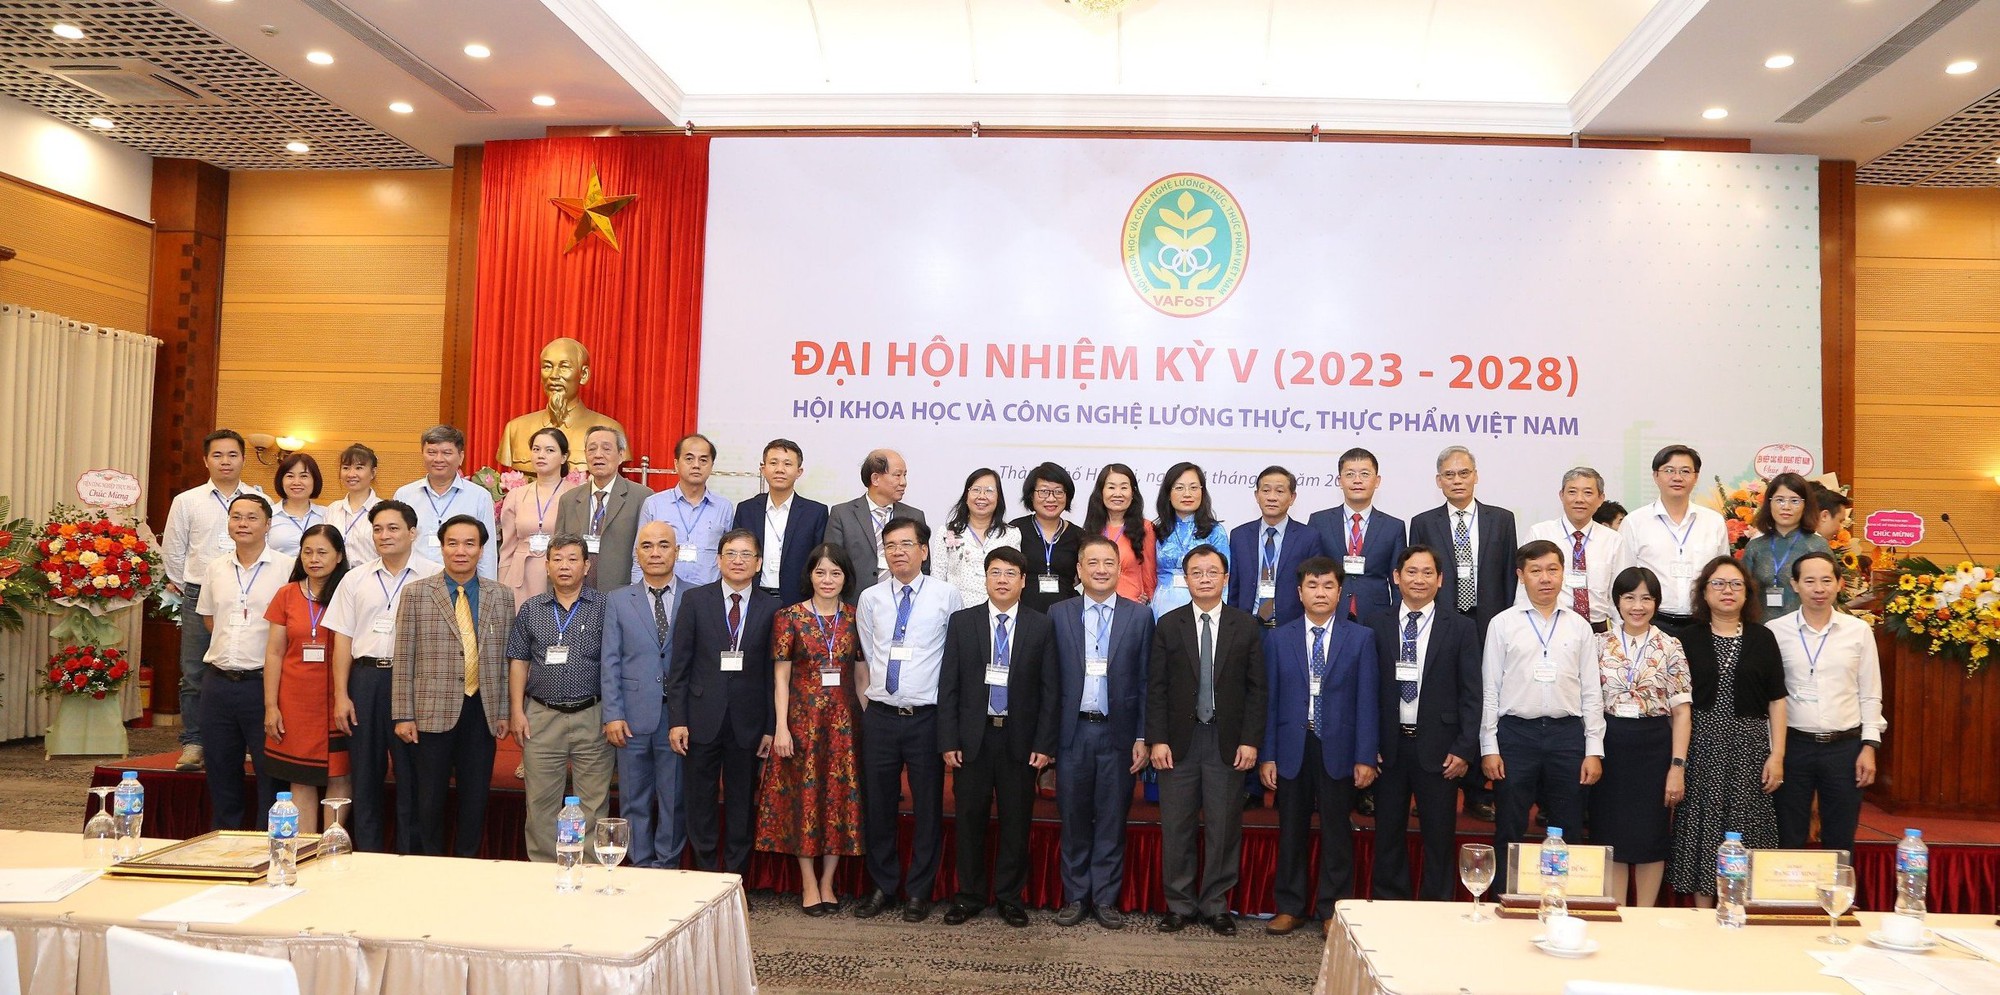 Đại hội Hội Khoa học và Công nghệ lương thực, thực phẩm Việt Nam nhiệm kỳ V, 2023-2028 - Ảnh 4.